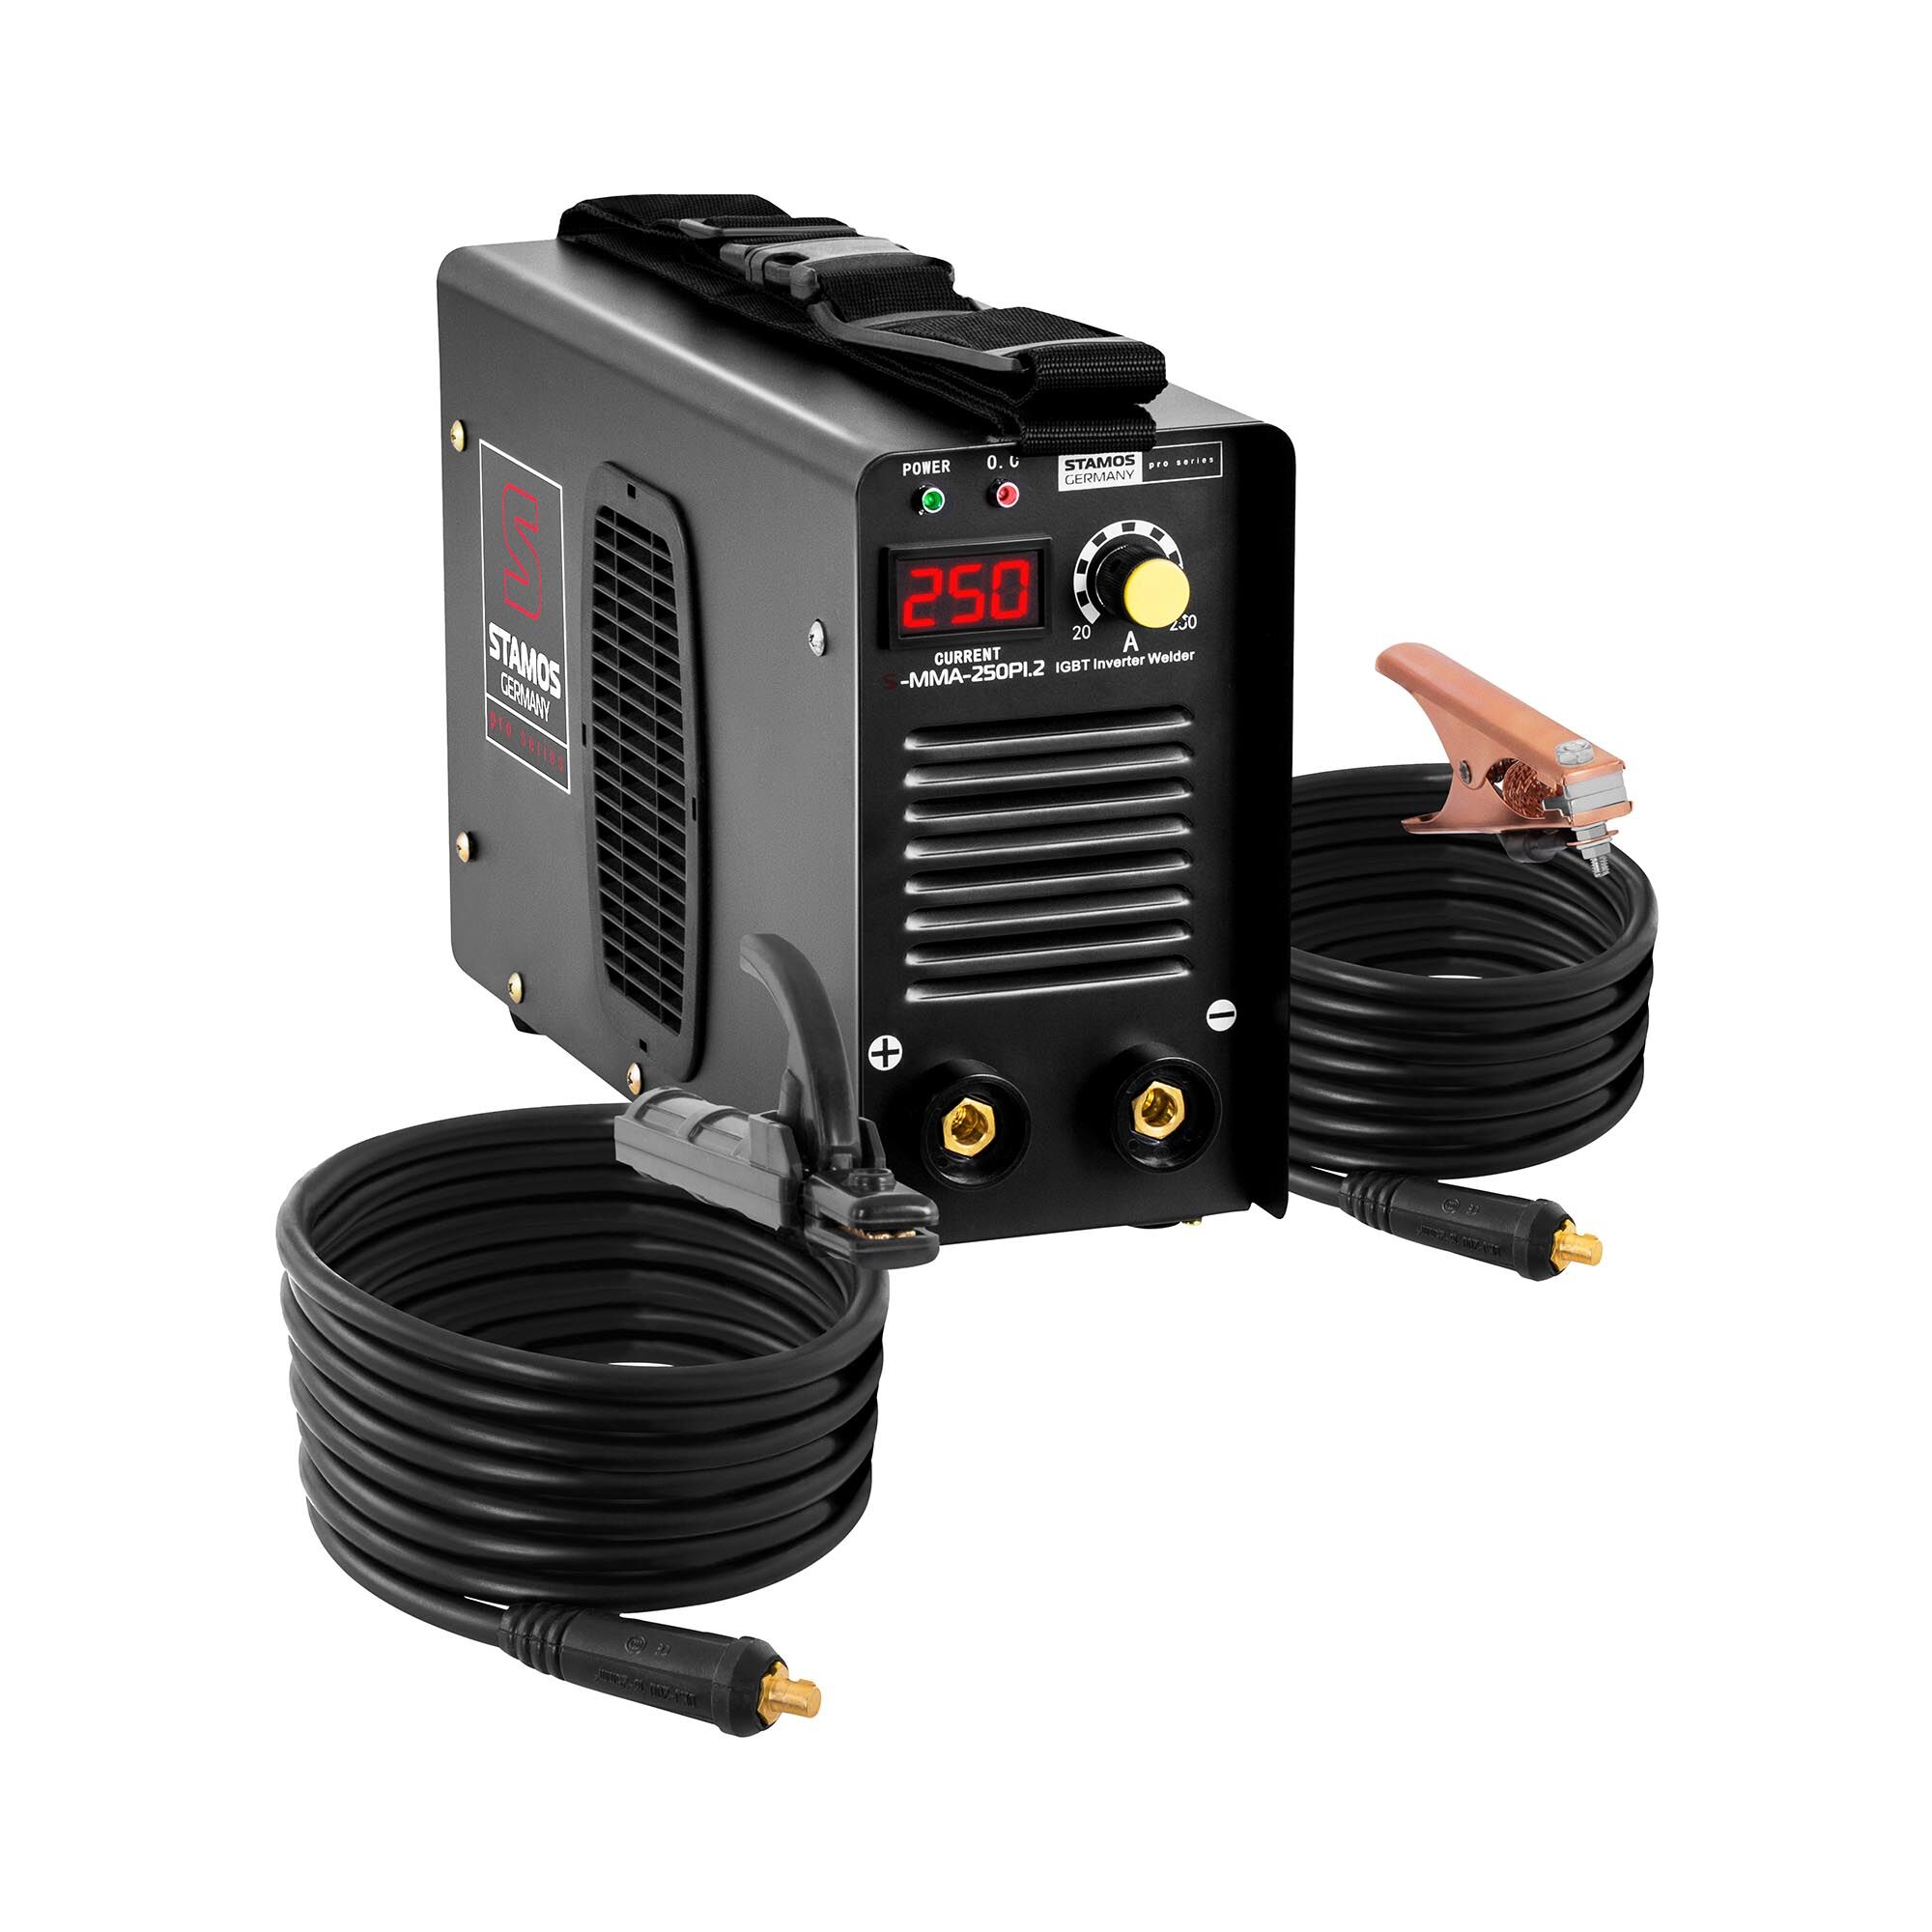 Stamos Pro Series Elektroden Schweißgerät - 250 A - 8 Meter Kabel - Hot Start - PRO 10020228